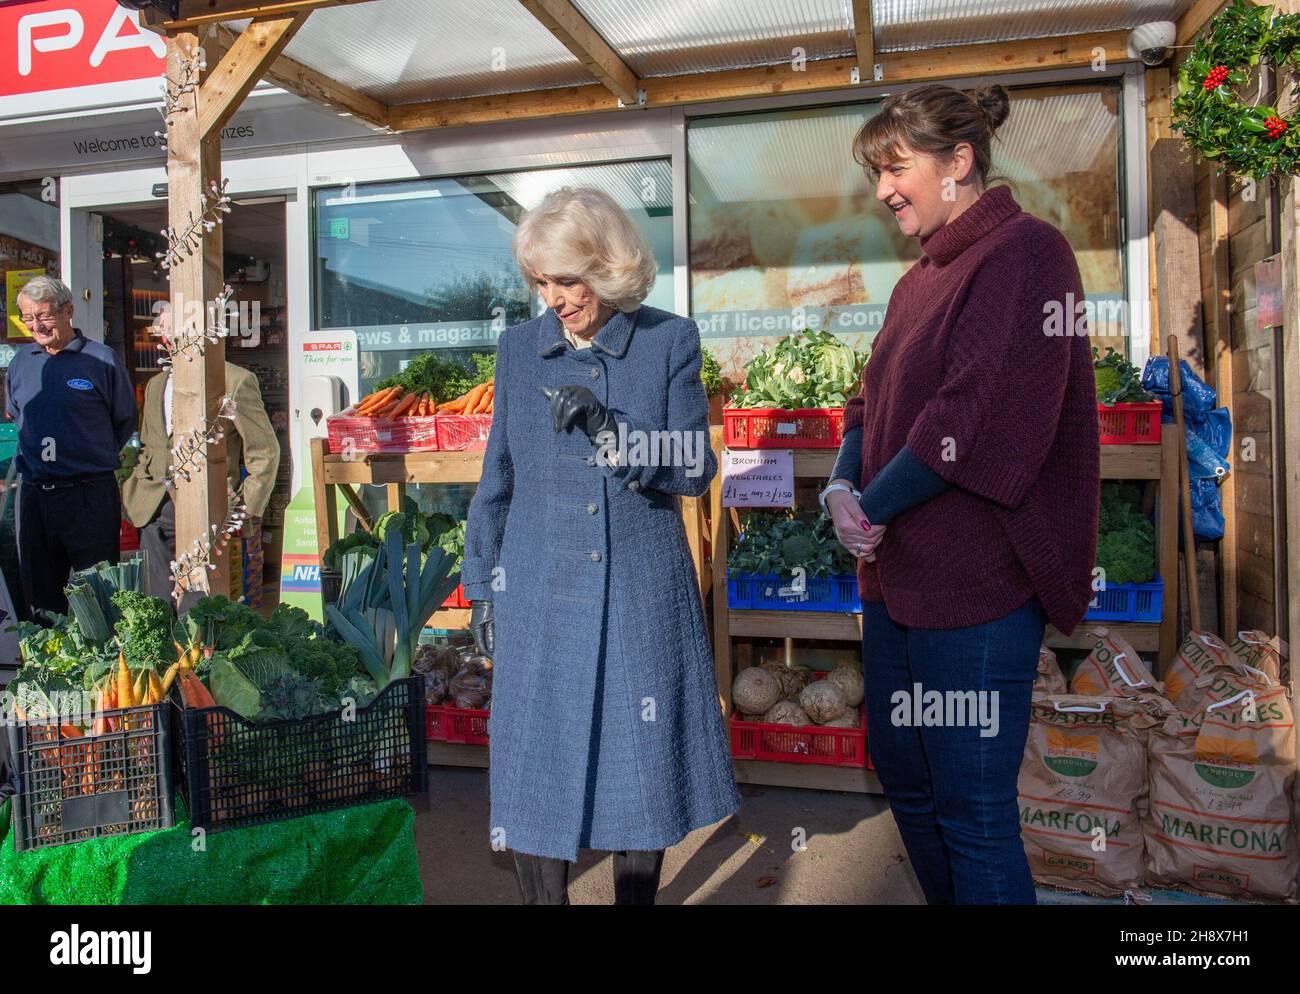 La duquesa de Cornwall se reúne con Hannah Paget, agricultor local y proveedor de verduras, durante una visita al propietario independiente de la tienda de Spar, Derek Tinnion, en su tienda de Devizes, Wilsthire, para agradecerle a él y a su familia y personal su incansable trabajo en el apoyo a la comunidad de Devizes durante más de 60 años, especialmente durante la pandemia. Fecha de la foto: Jueves 2 de diciembre de 2021. Foto de stock